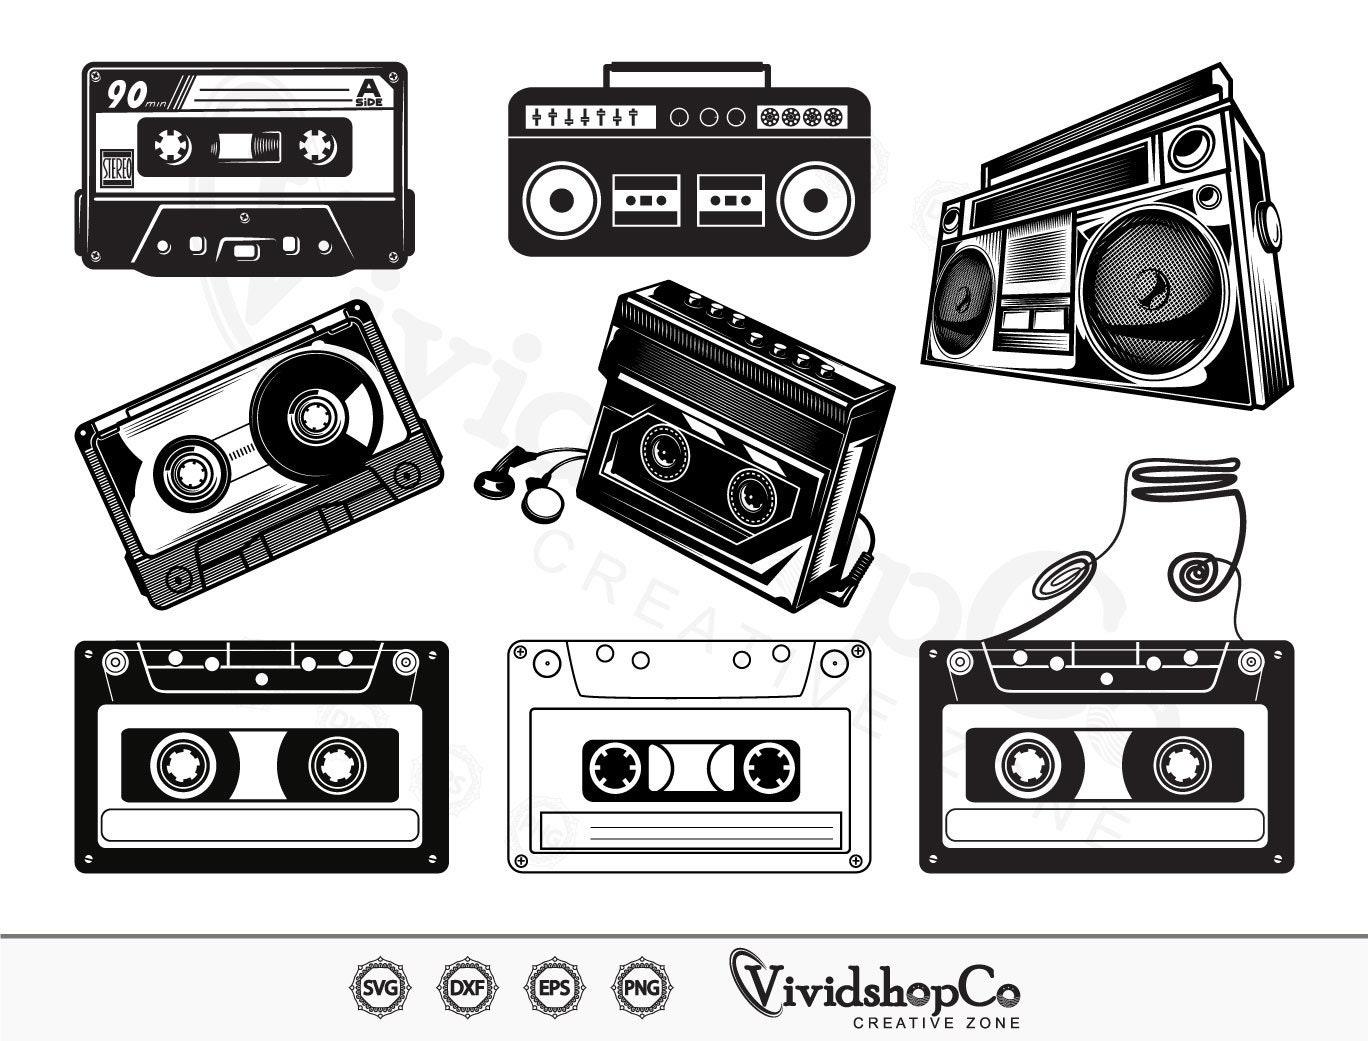 Cassette Tape SVG, Cassette Tape Vector, Silhouette, Cricut file, Clipart,  Cuttable Design, Png, Dxf & Eps Designs.